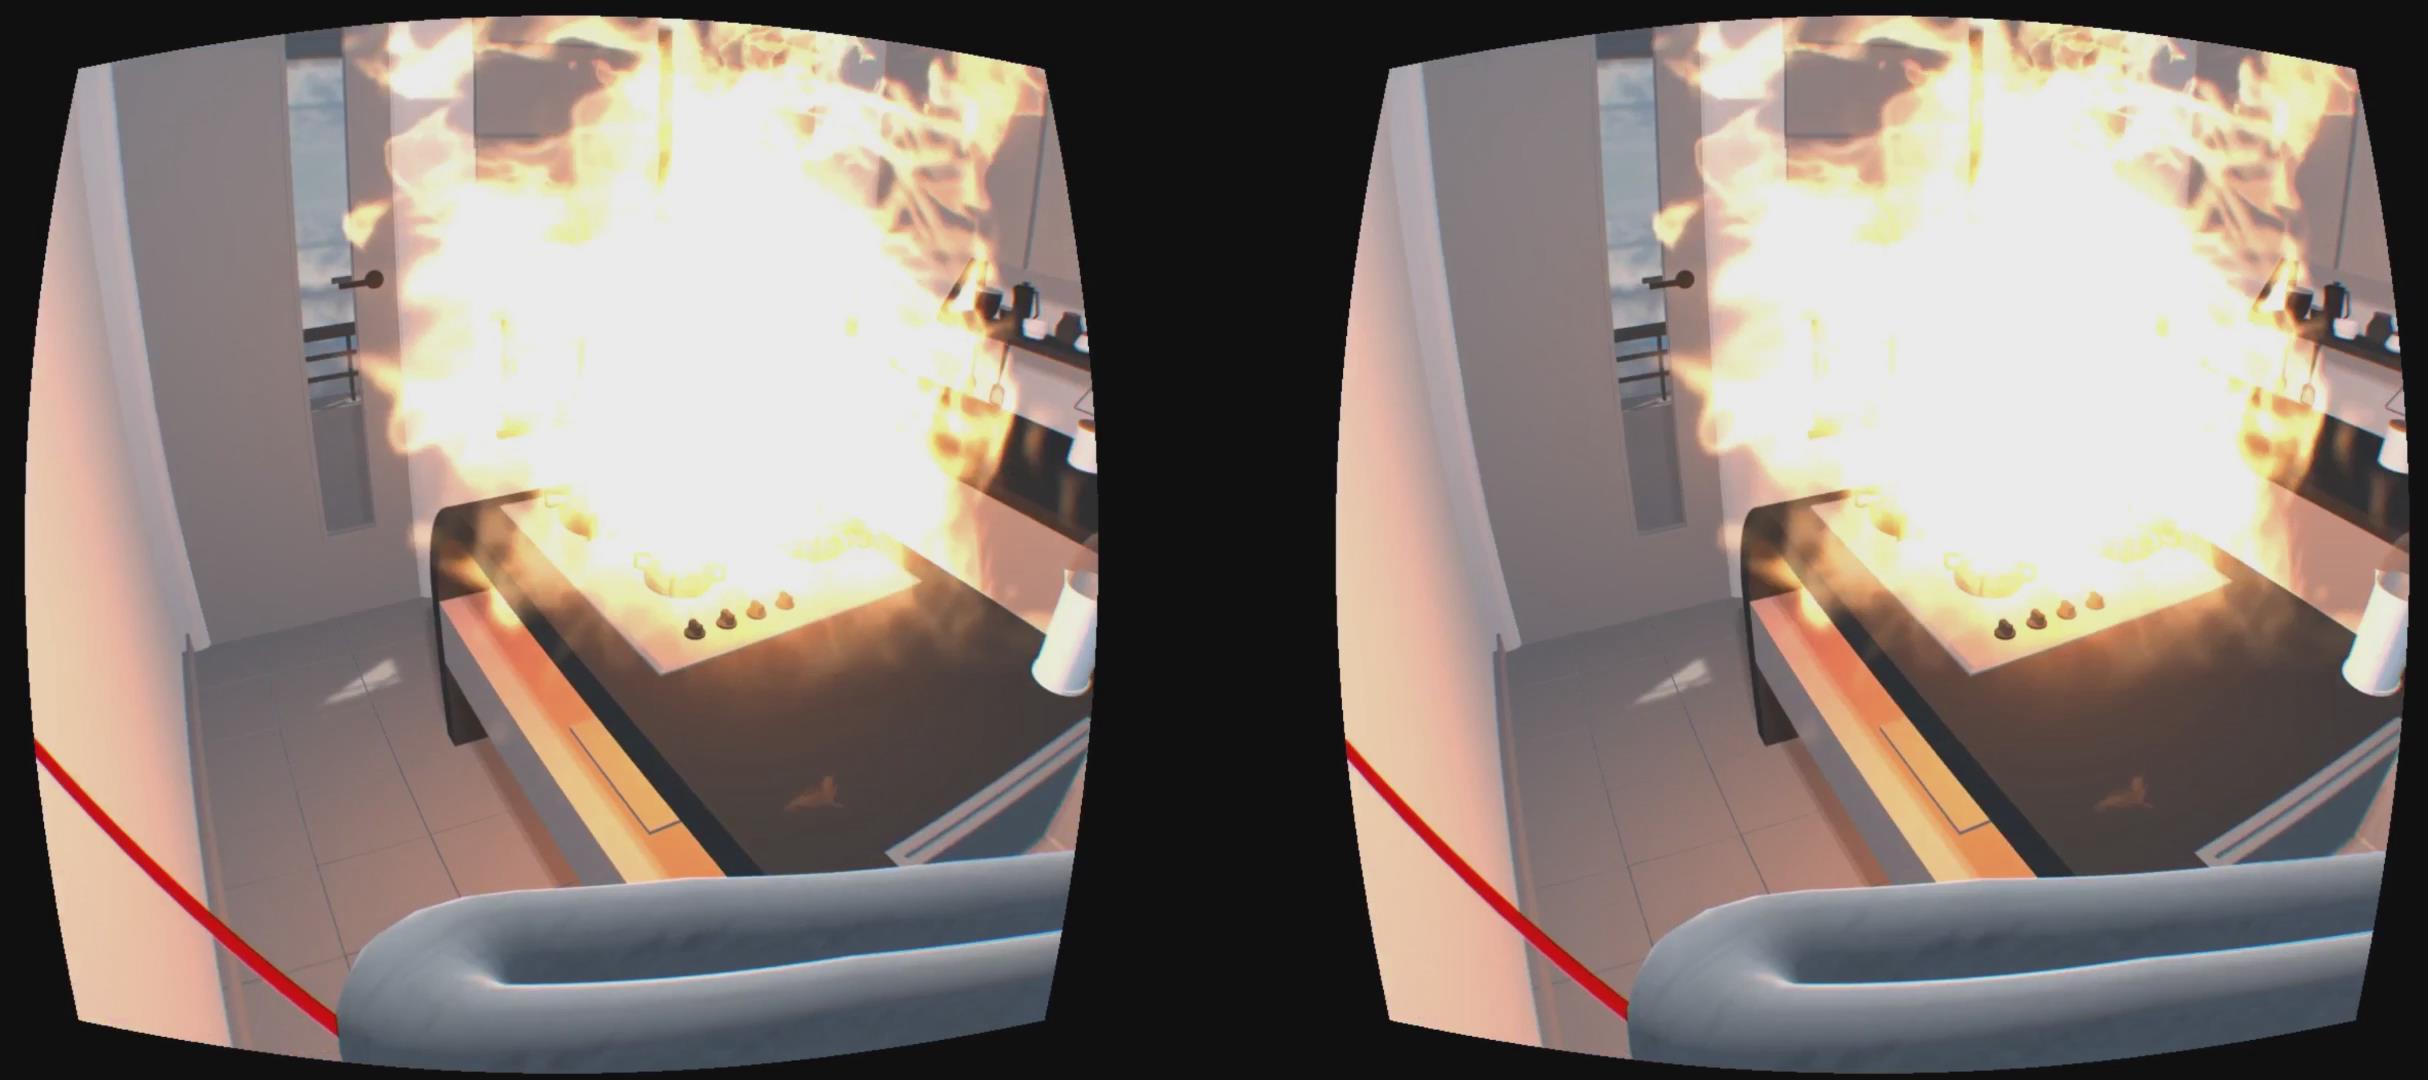 虚拟现实与游戏竞赛作品——消防数字展厅与模拟演练